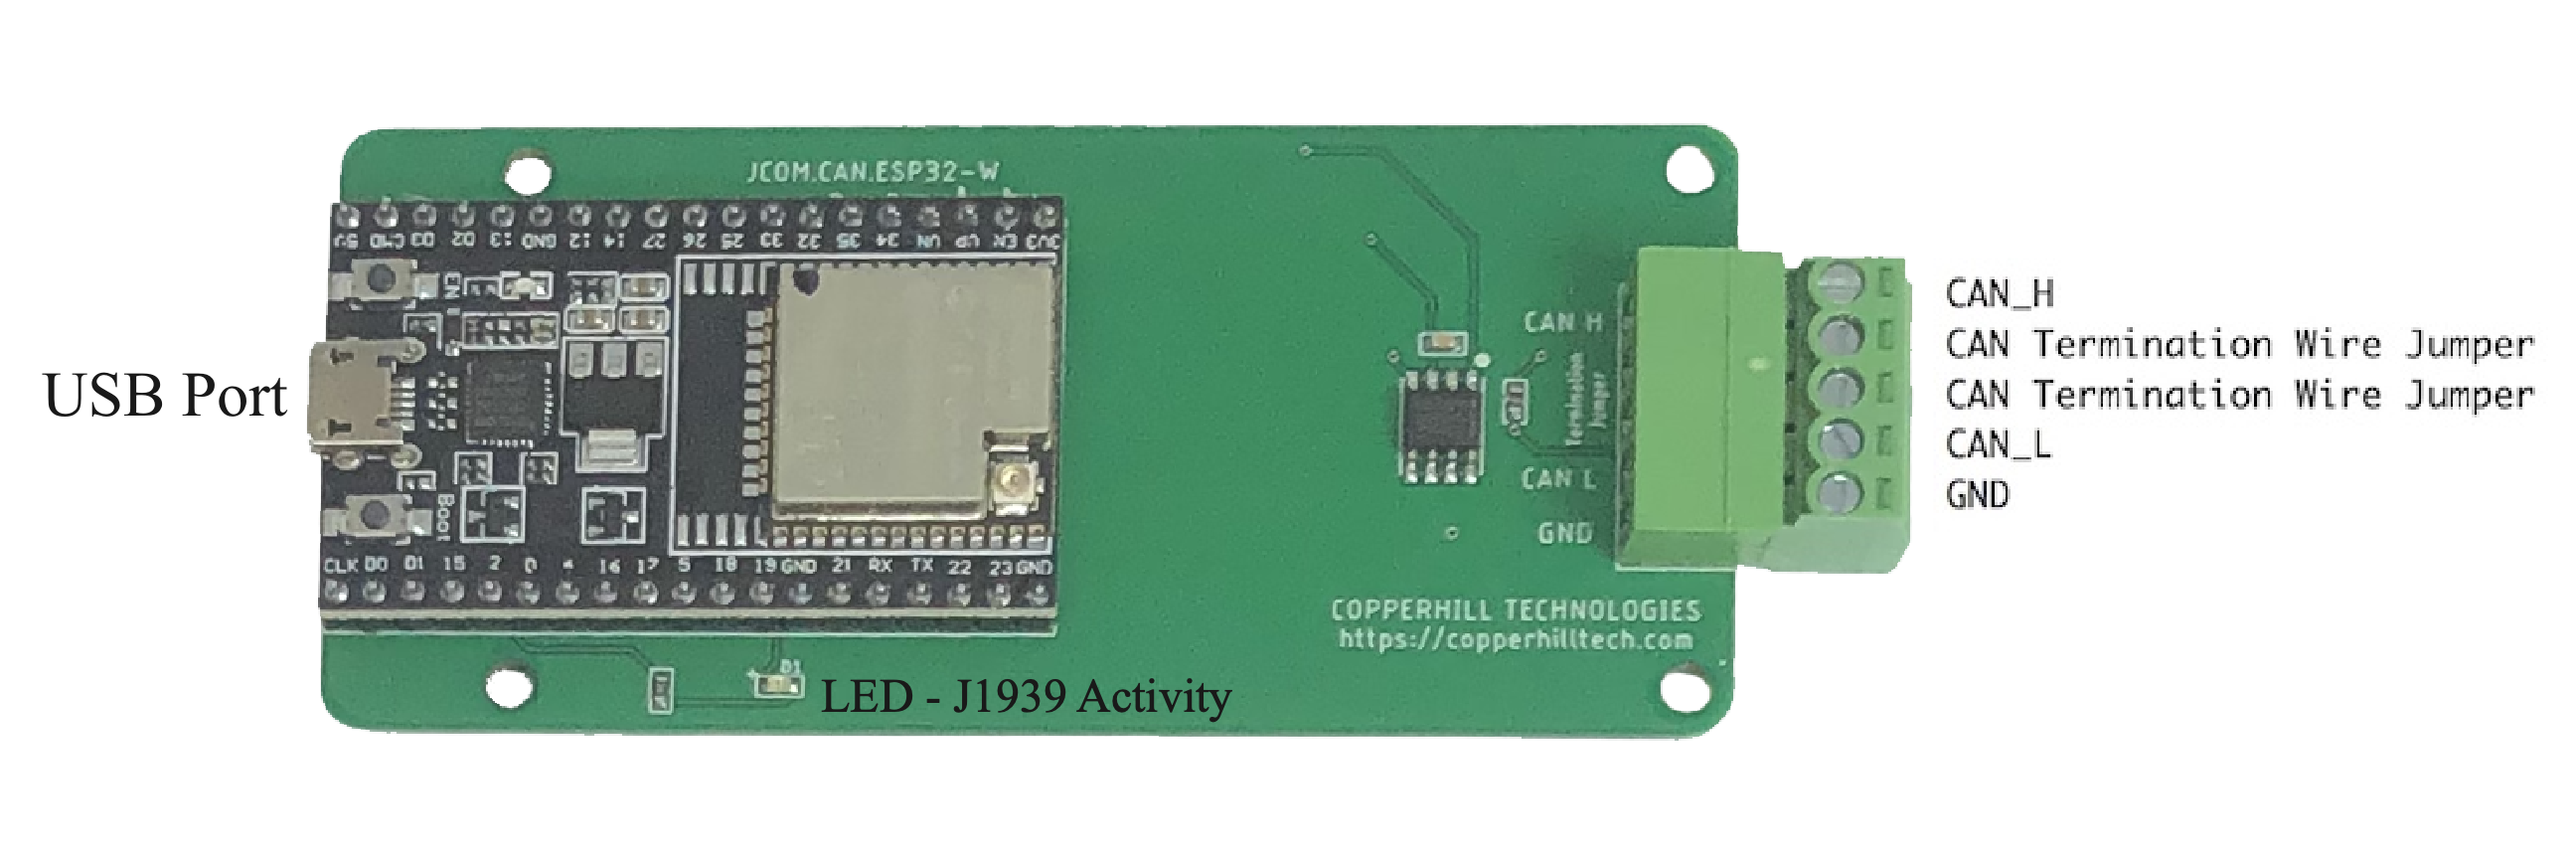 JCOM.J1939.USB-B Board Components